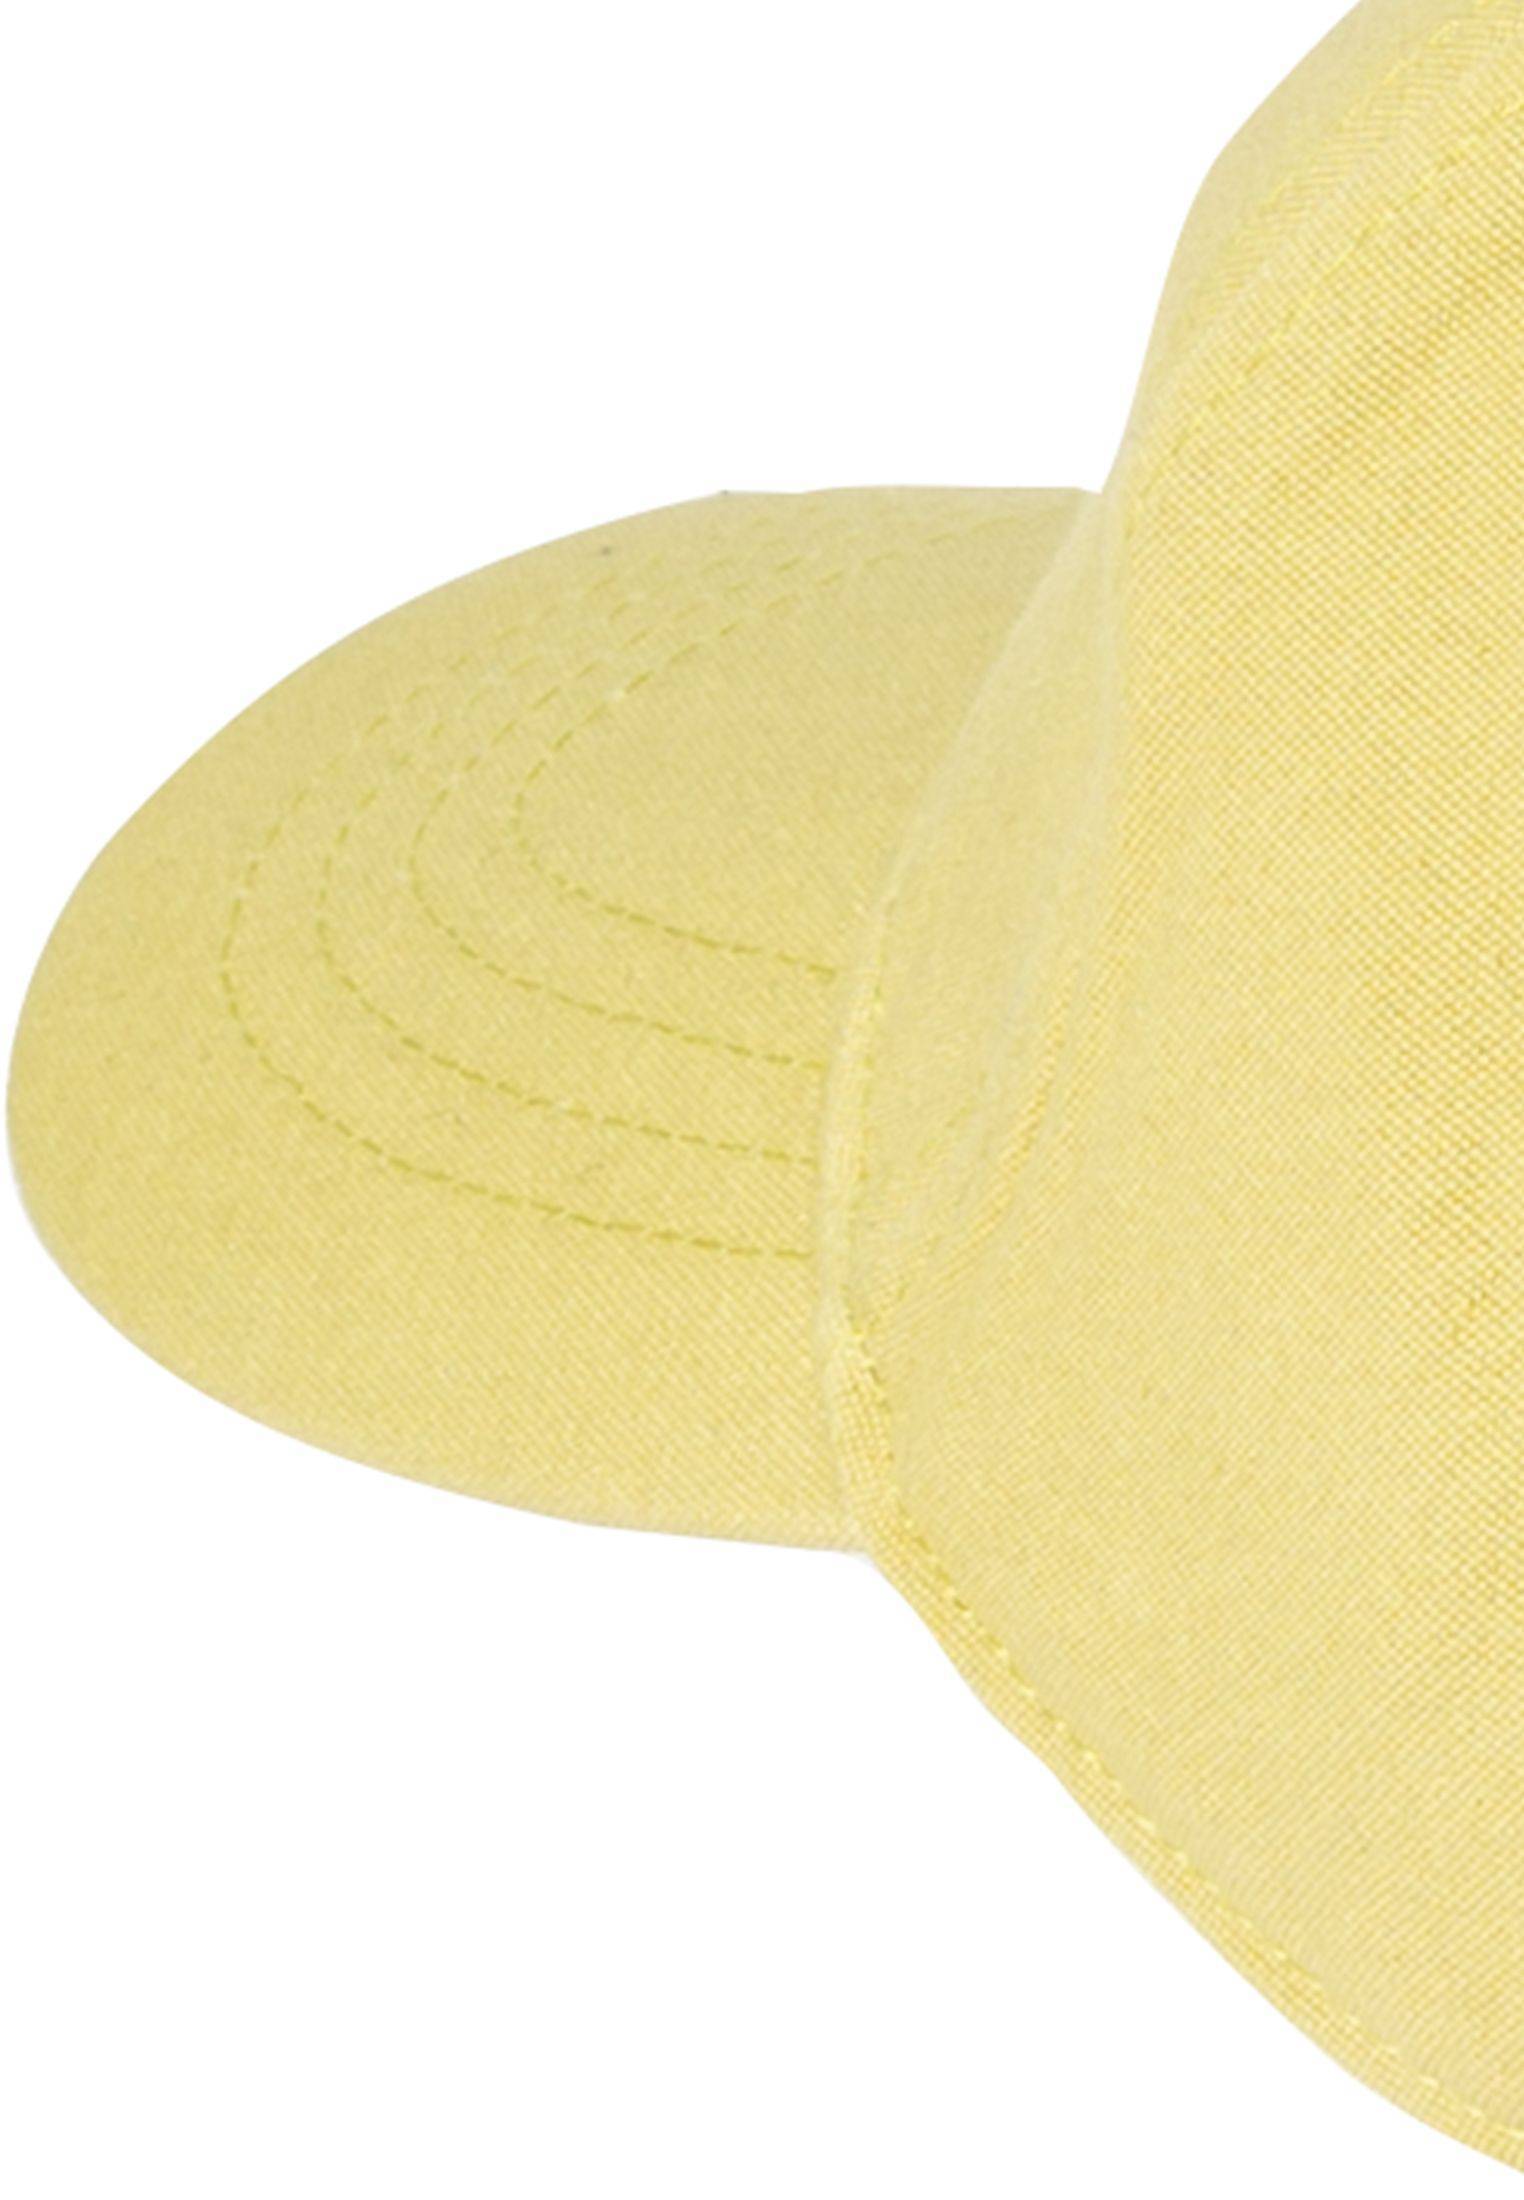 Мужская кепка Camel Active (Baseball cap 4062305C23), оливковая, цвет оливковый, размер O/S - фото 4